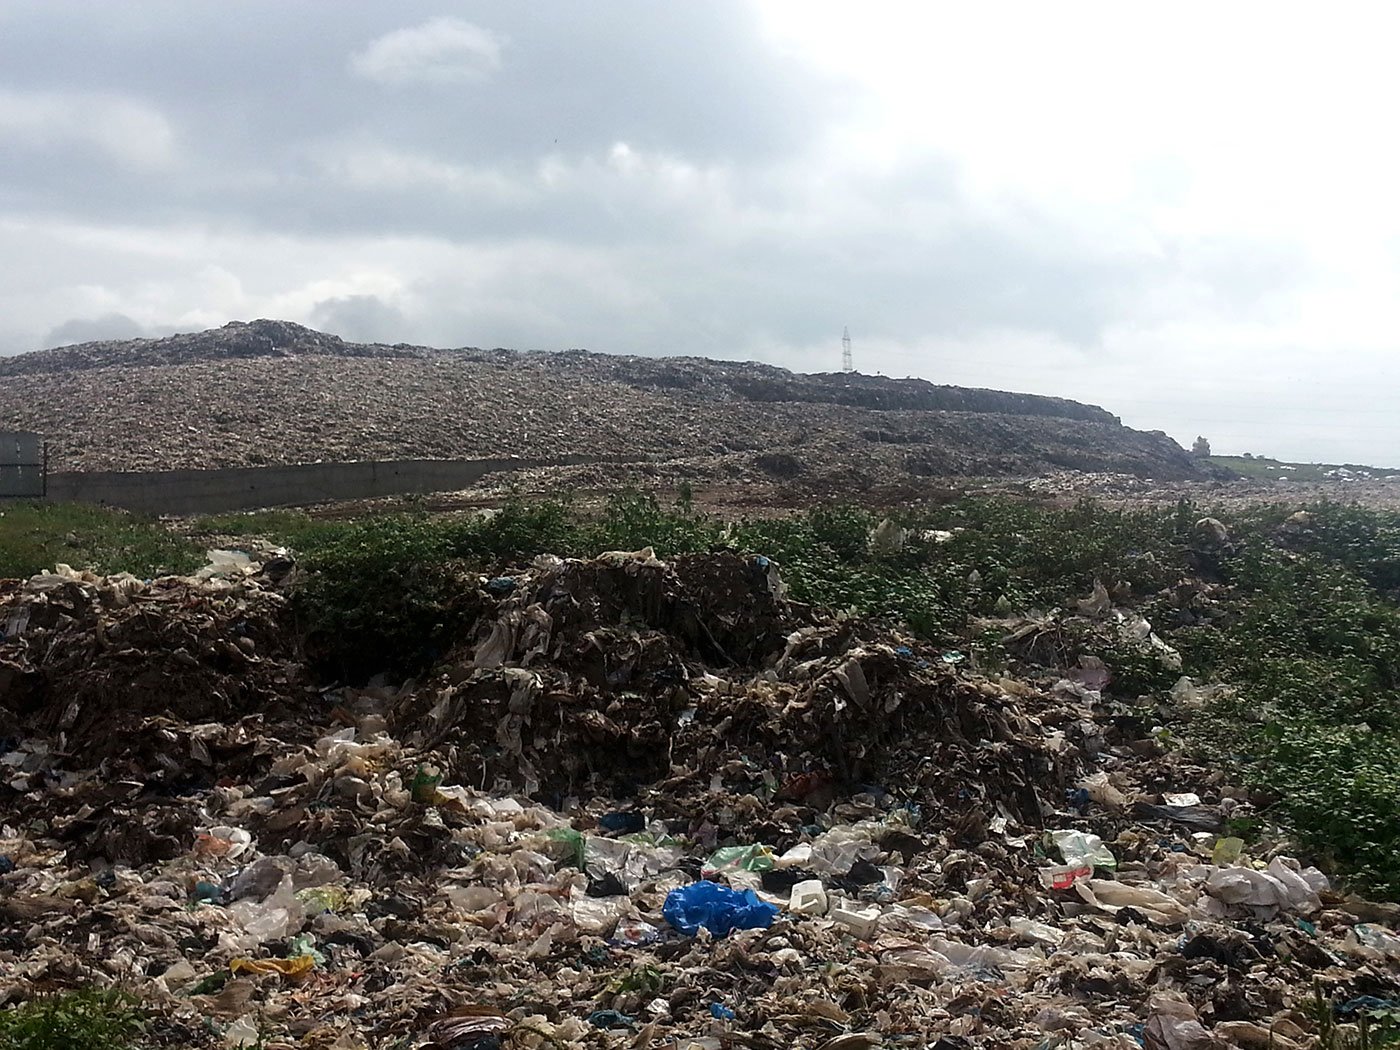 A wide shot of the Uruli Devachi garbage dump